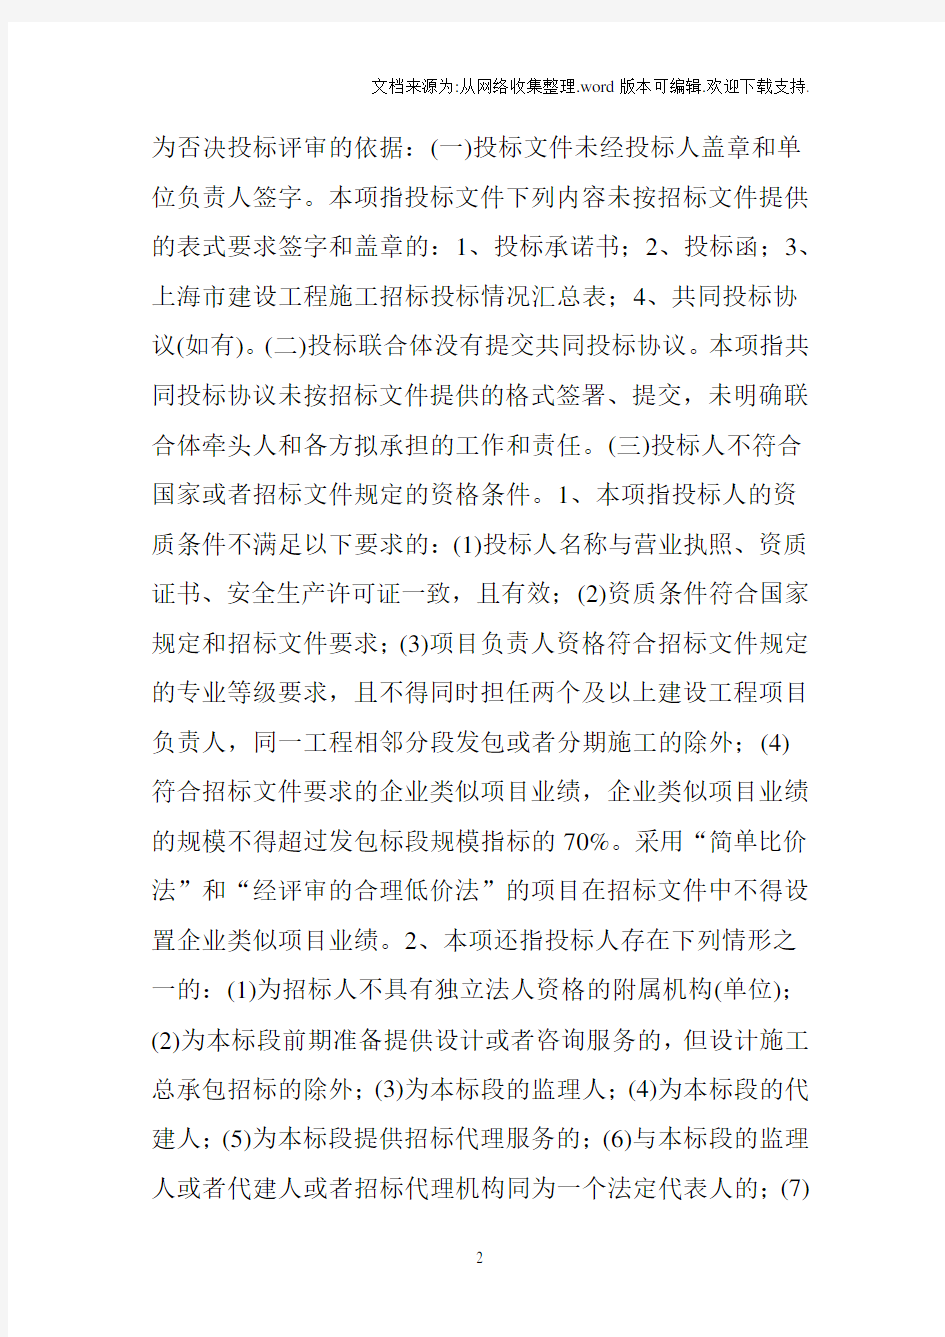 《上海市房屋建筑和市政工程施工招标评标办法》